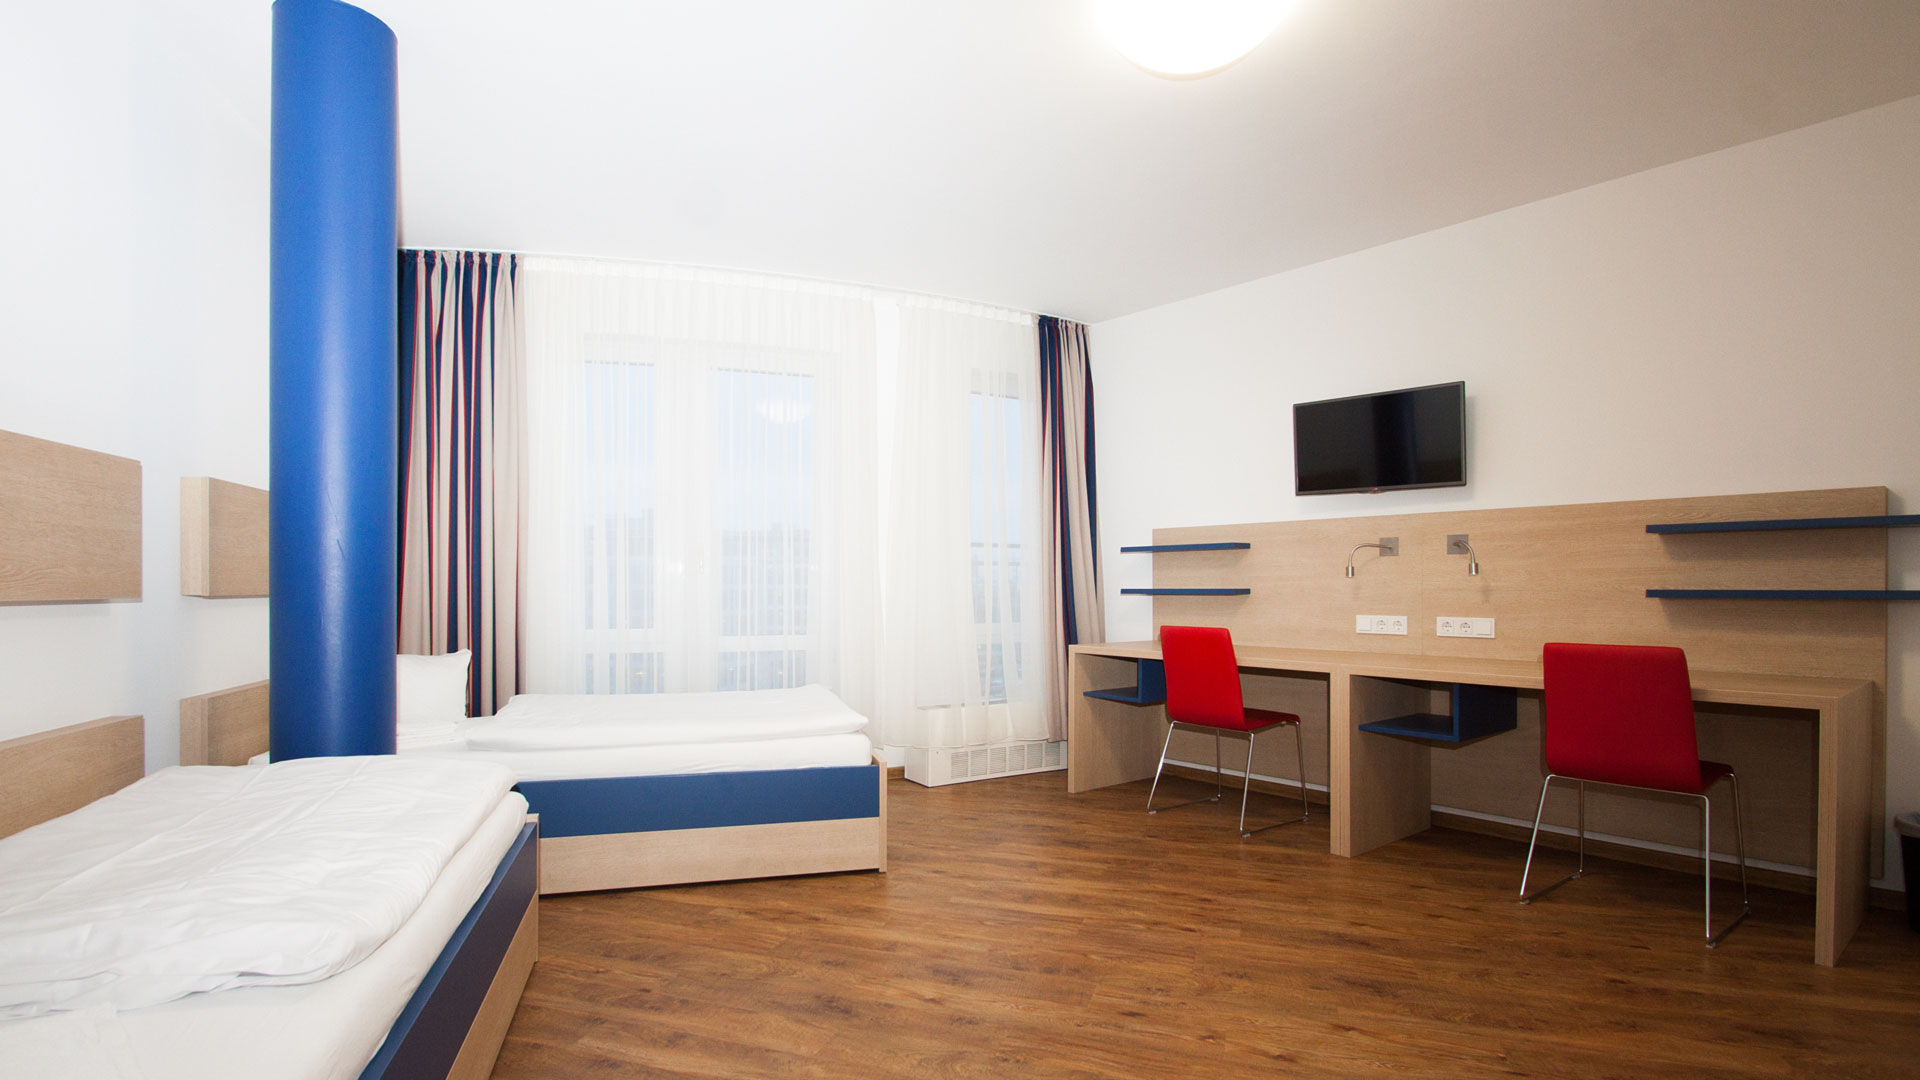 Une chambre à deux lits dans la résidence scolaire à Berlin (certaines chambres sont réservées pour les personnes allergiques)